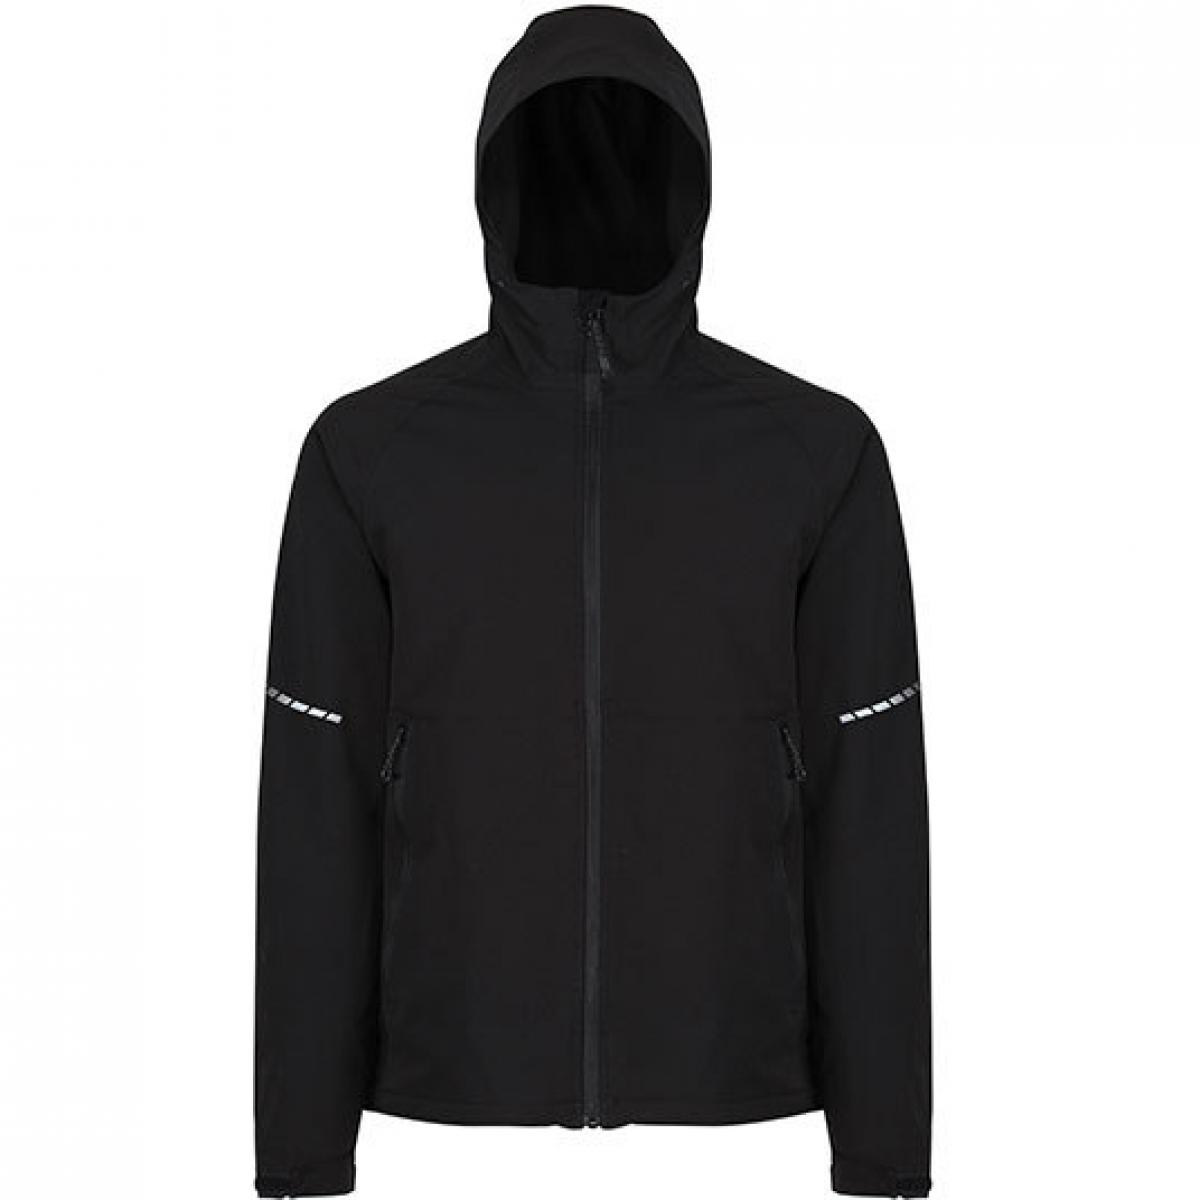 Hersteller: Regatta Professional Herstellernummer: TRA710 Artikelbezeichnung: X-Pro Prolite Stretch Herren Softshell Jacket Farbe: Black